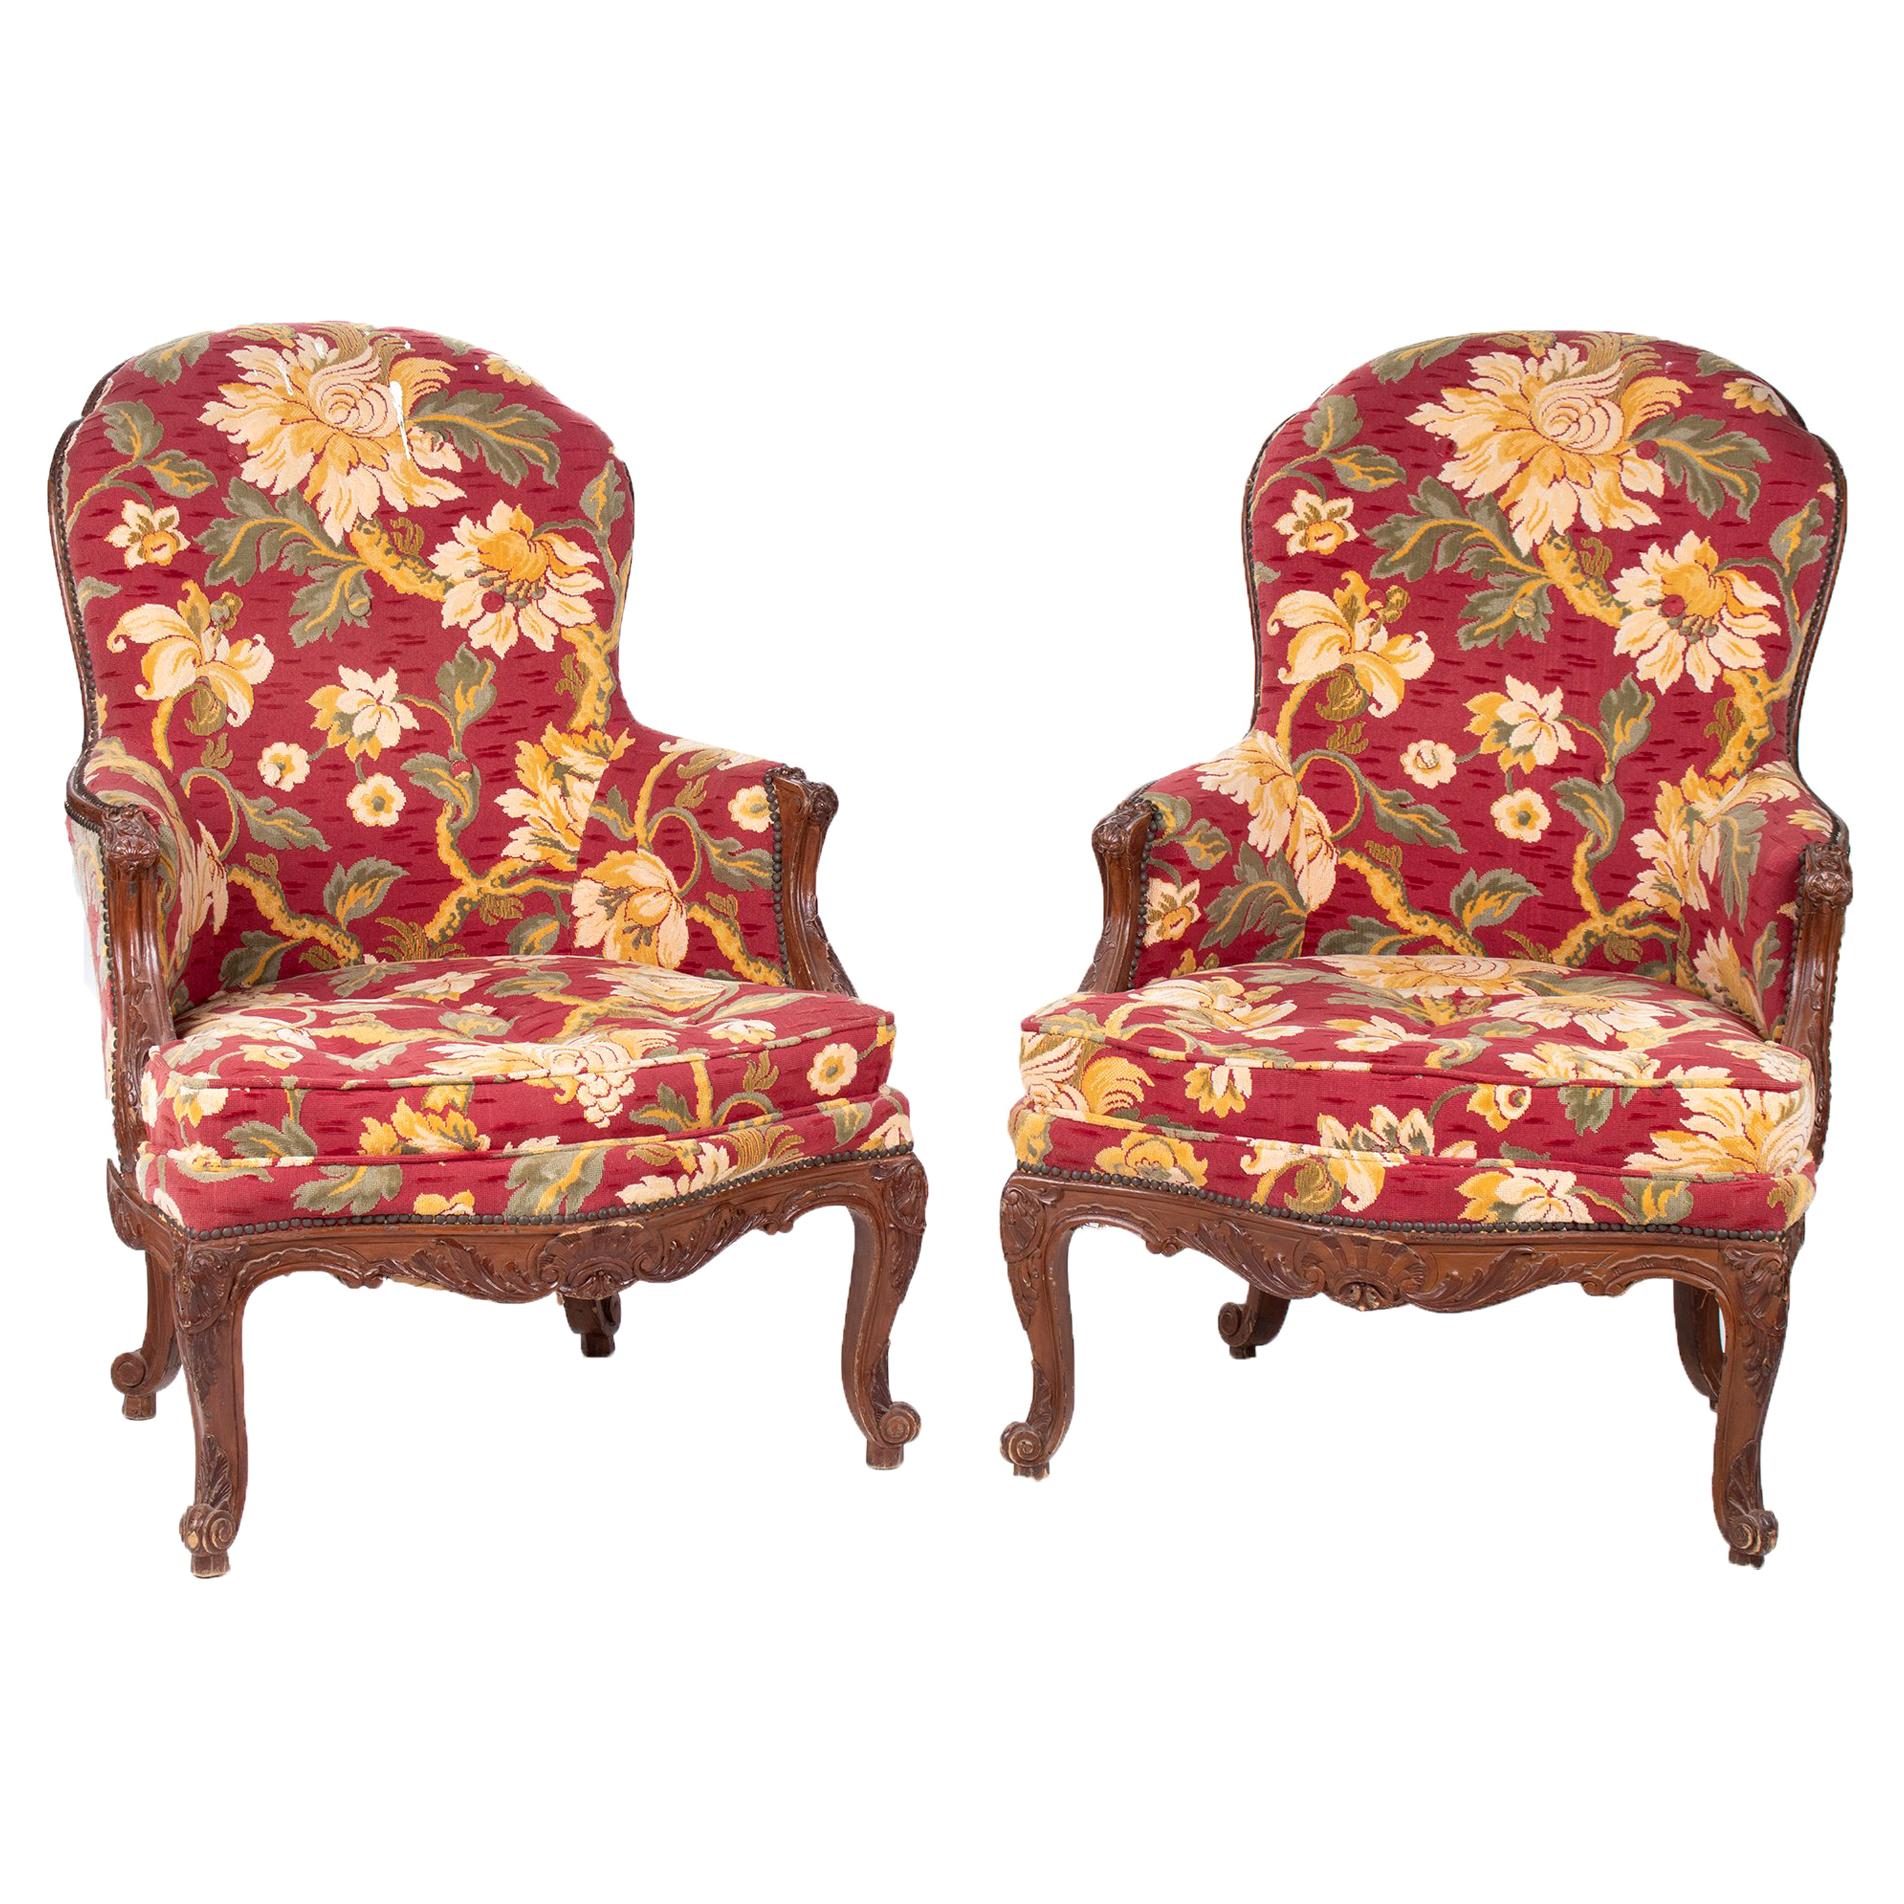 Paire de chaises françaises tapissées de motifs floraux du XIXe siècle